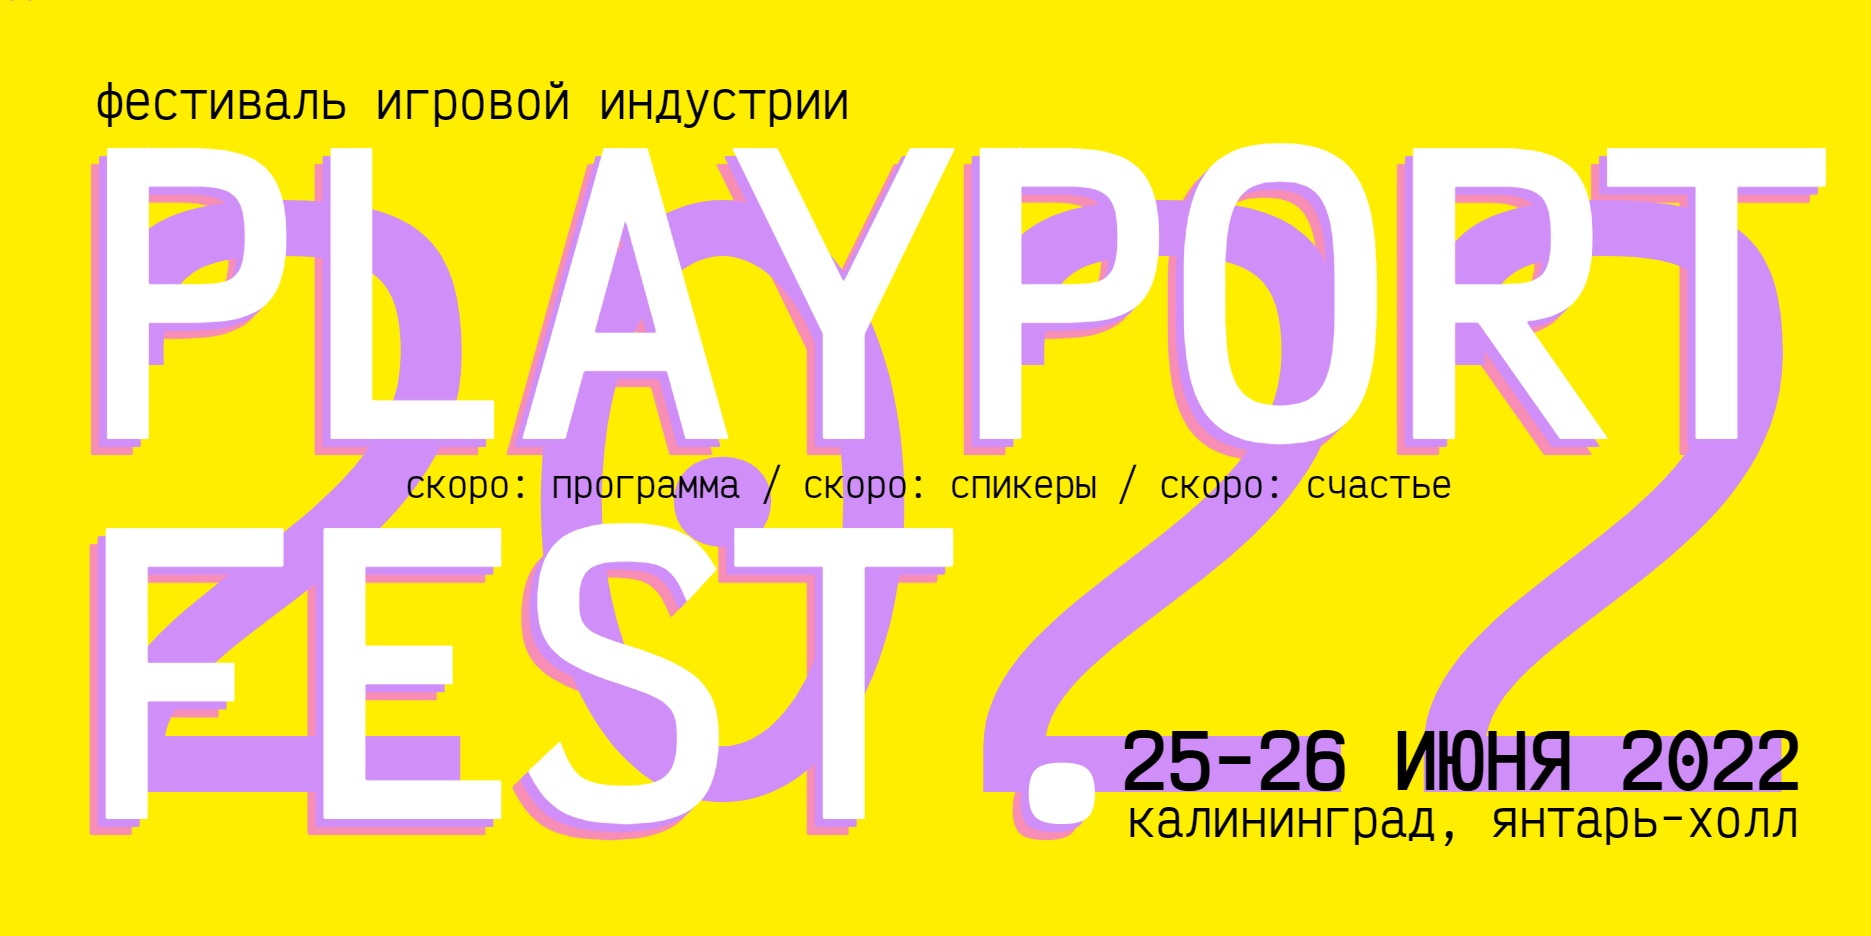 «Янтарь-холл» примет второй международный фестиваль игровой индустрии PlayPort Fest  